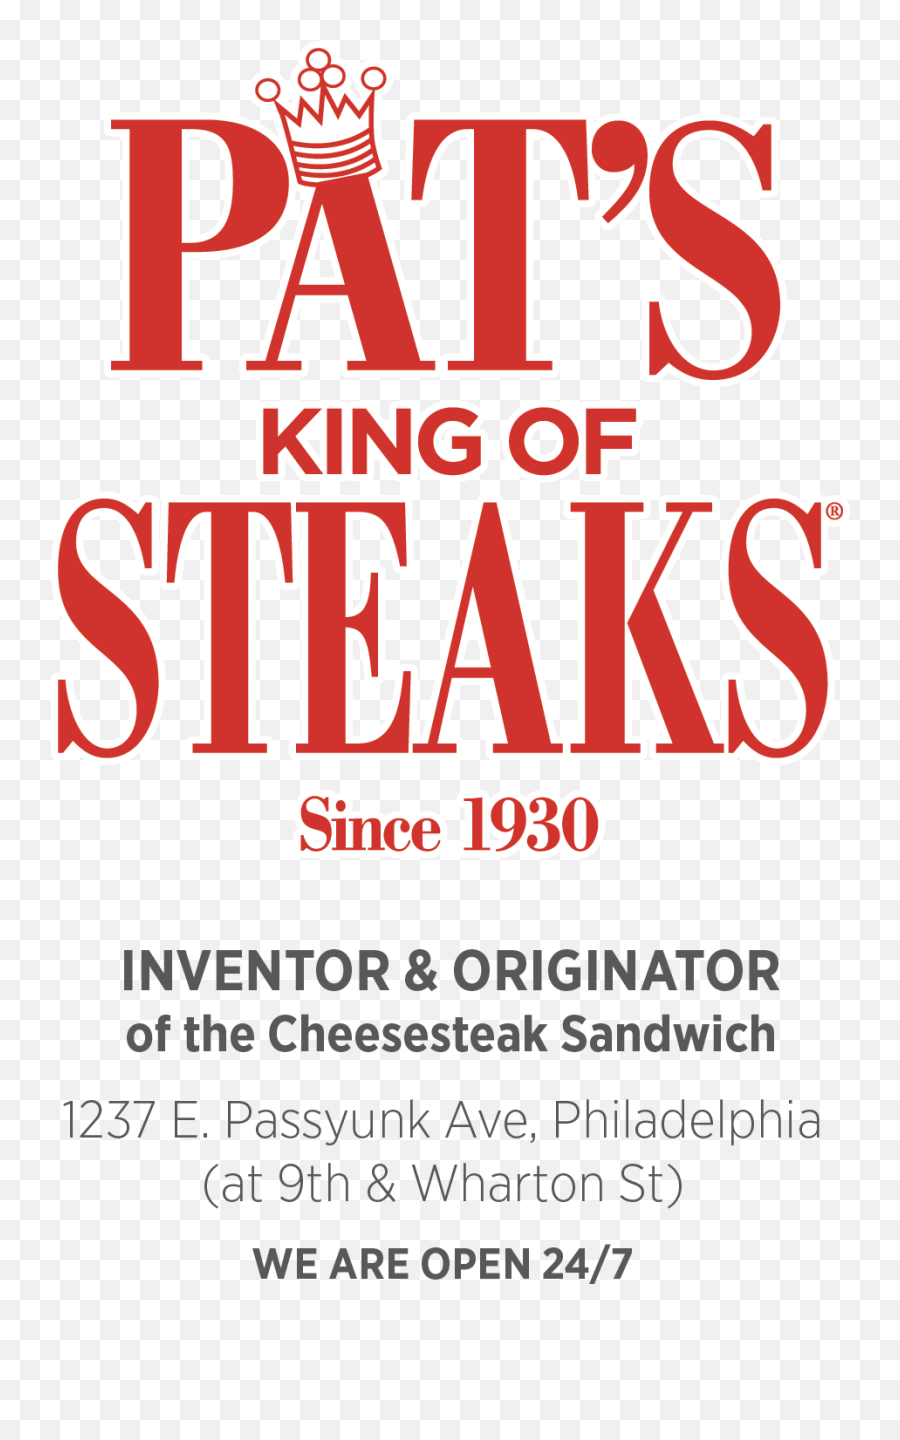 Pats King Of Steaks Since 1930 - King Of Steaks Logo Emoji,Pats Logo